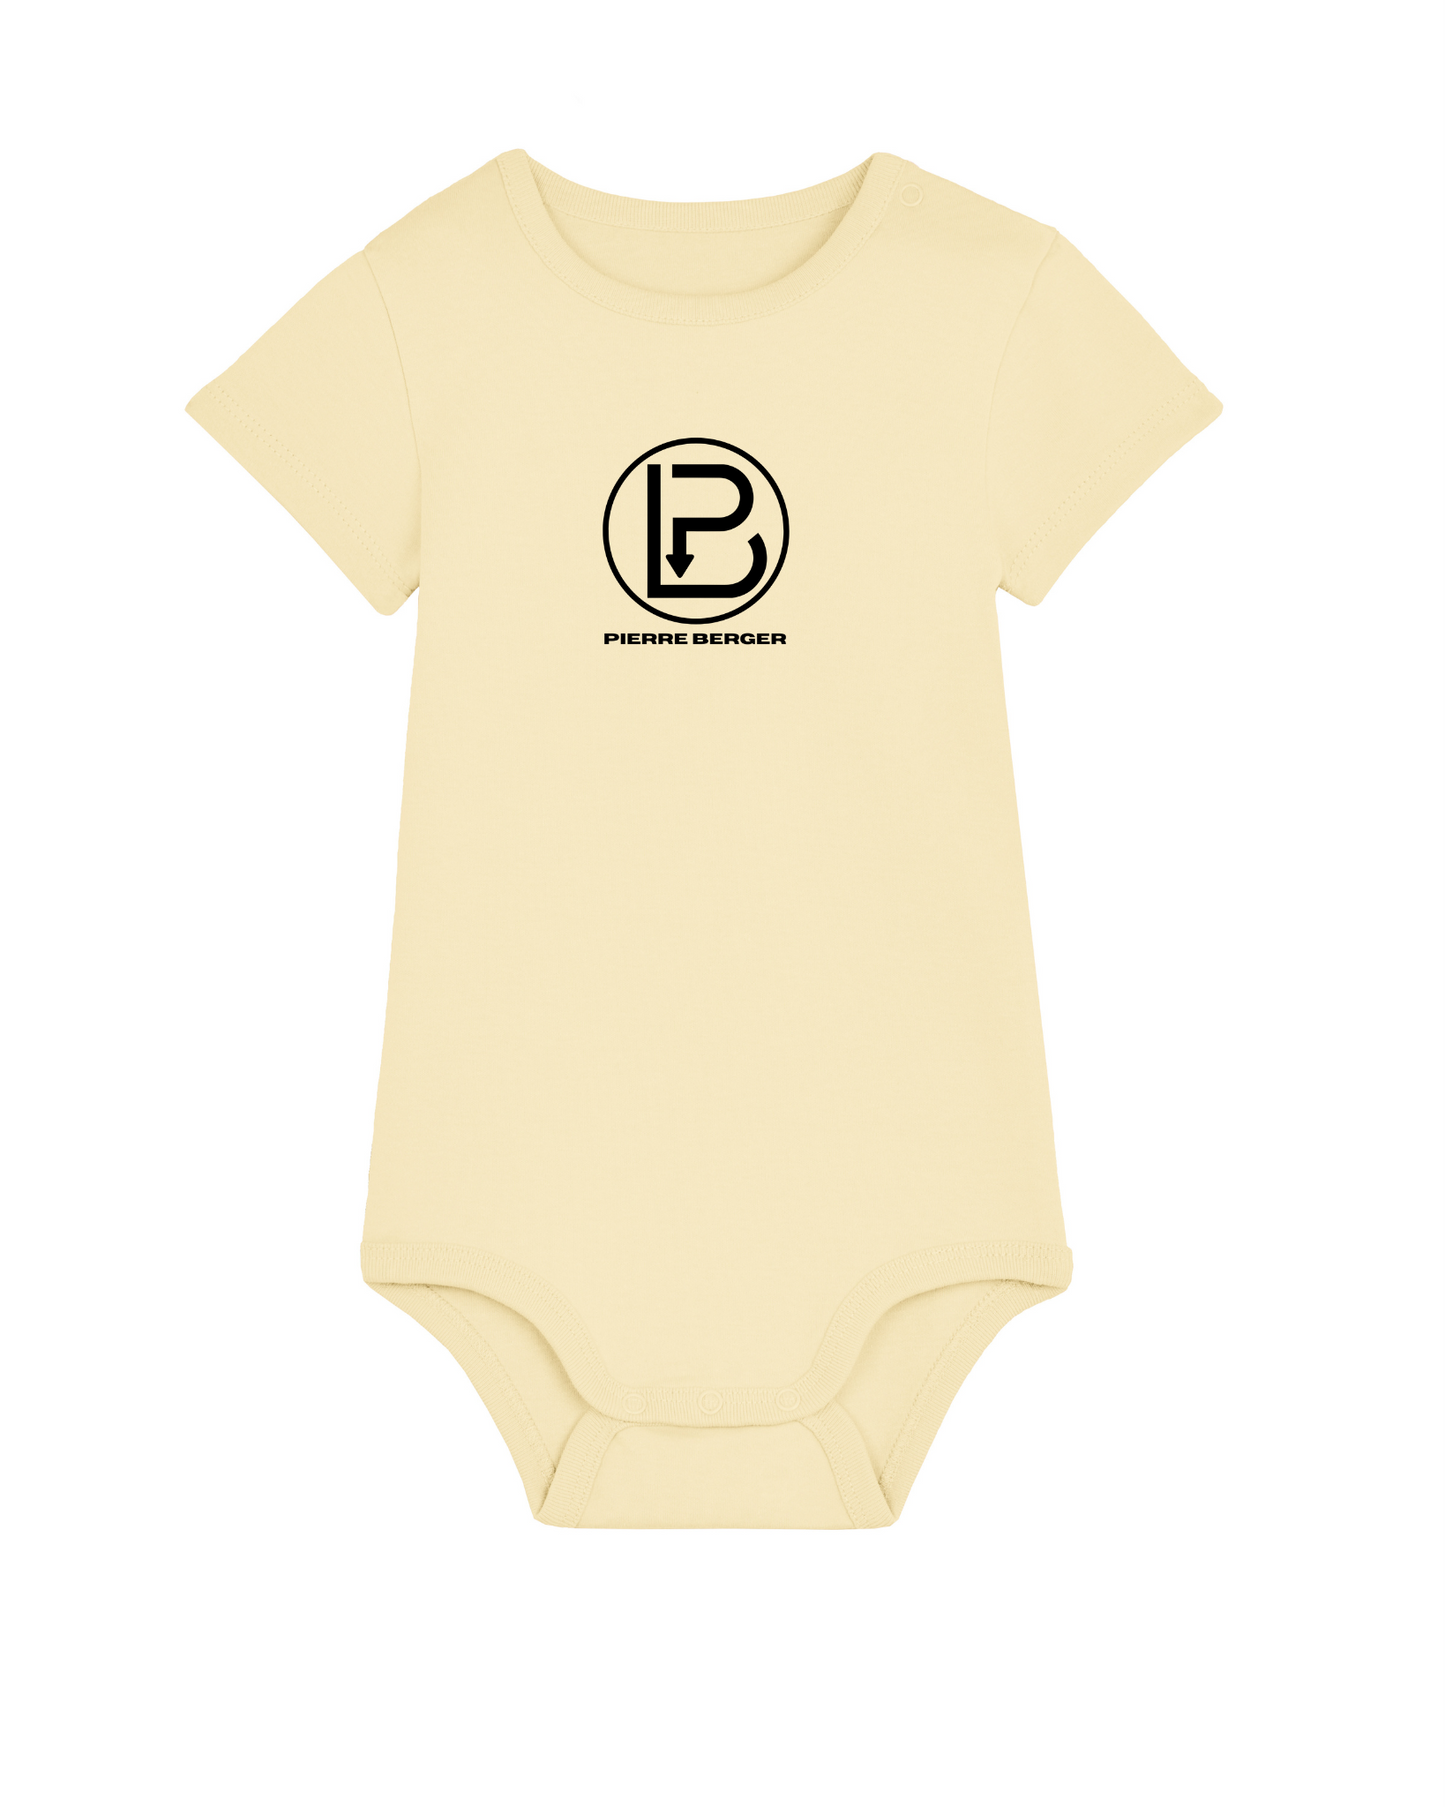 PIERRE BERGER - 100% Bio-Baumwolle Baby Body Stick